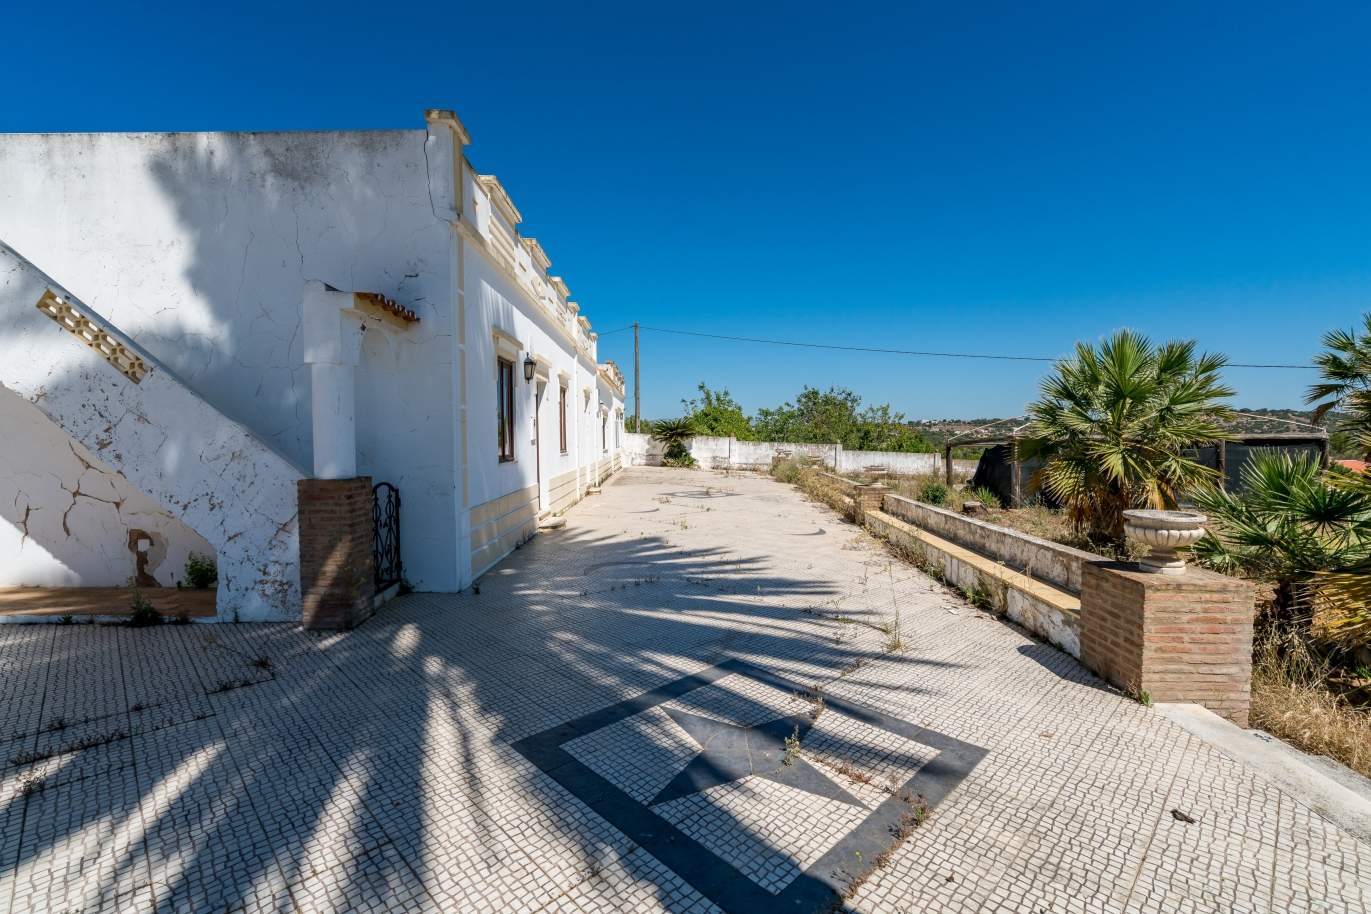 Venda de propriedade em Alcantarilha, Silves, Algarve_105713